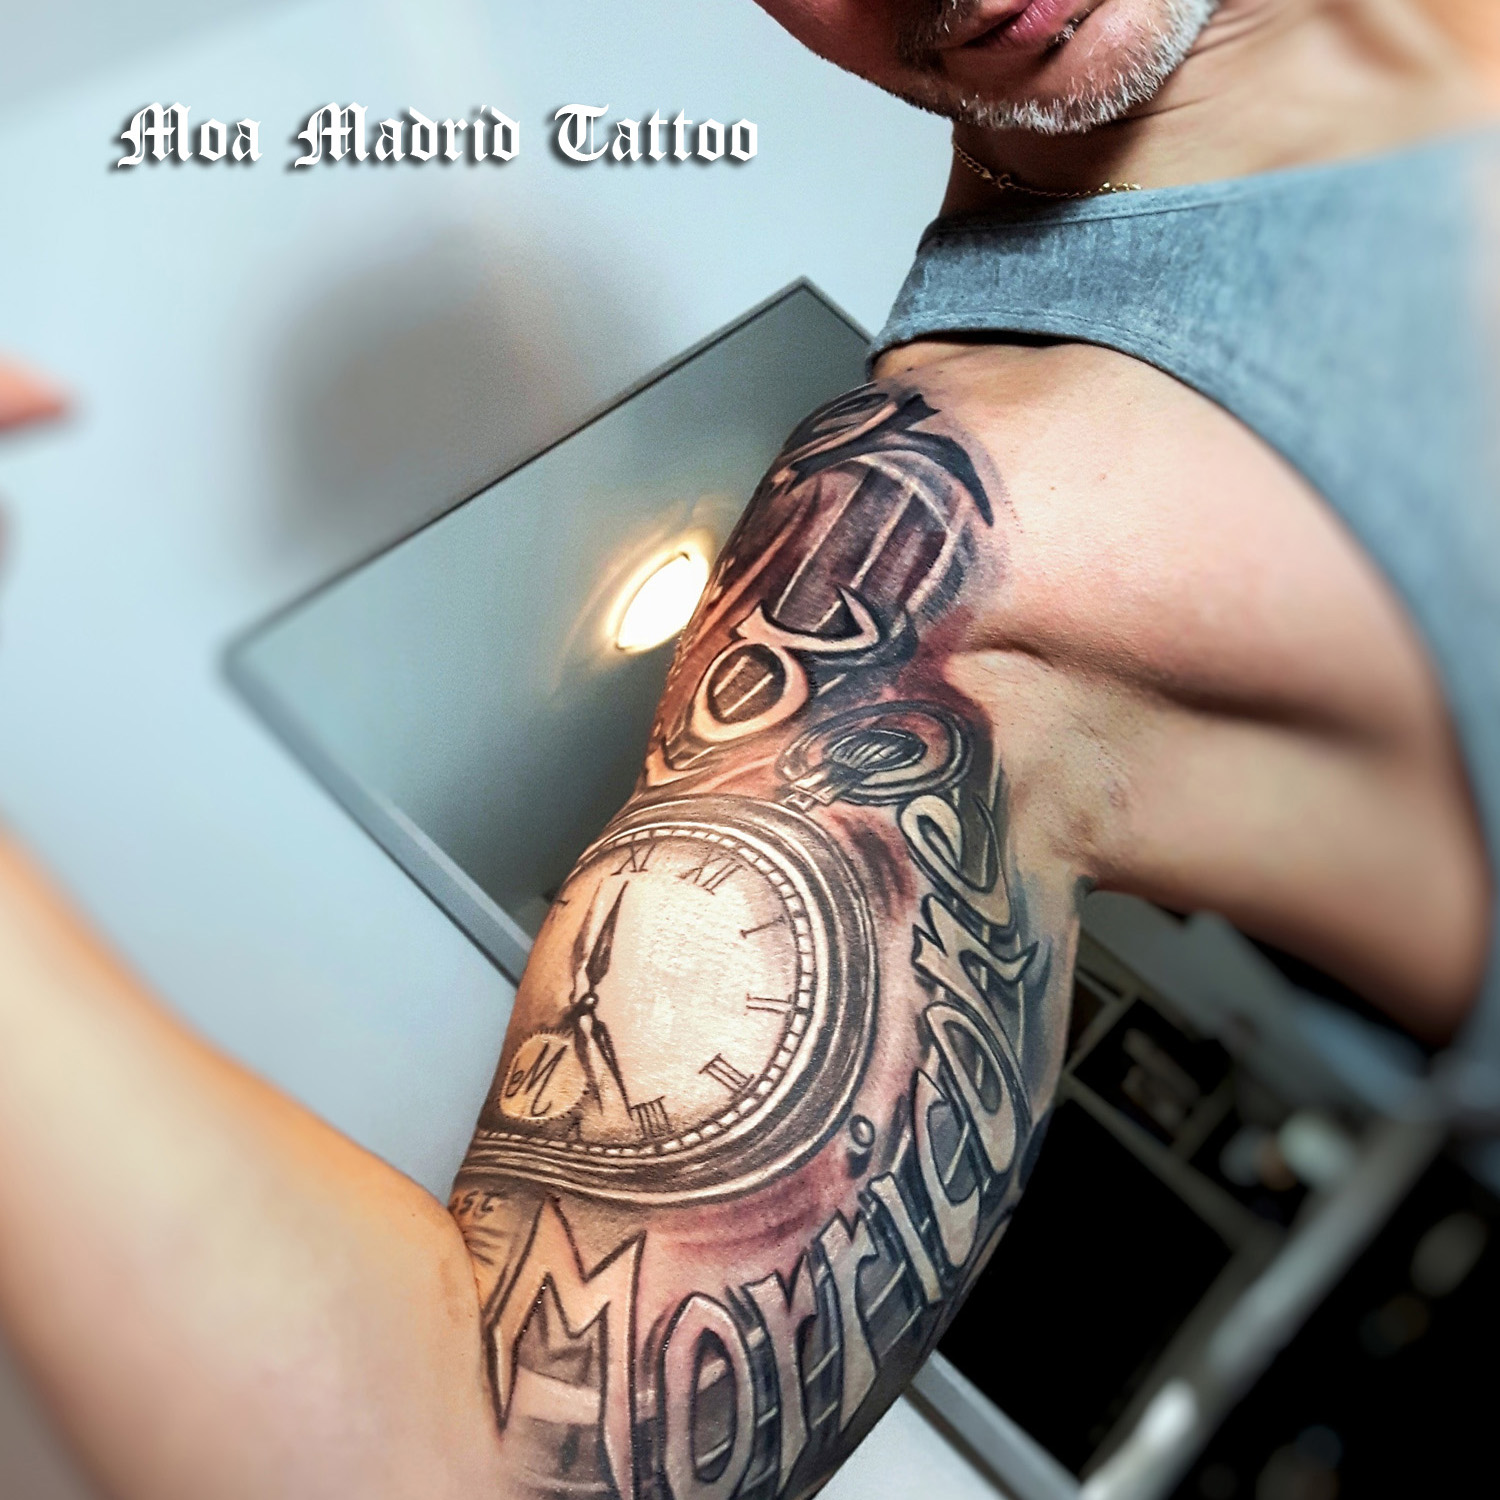 Tatuaje en realismo con relojes y textos con efecto 3D